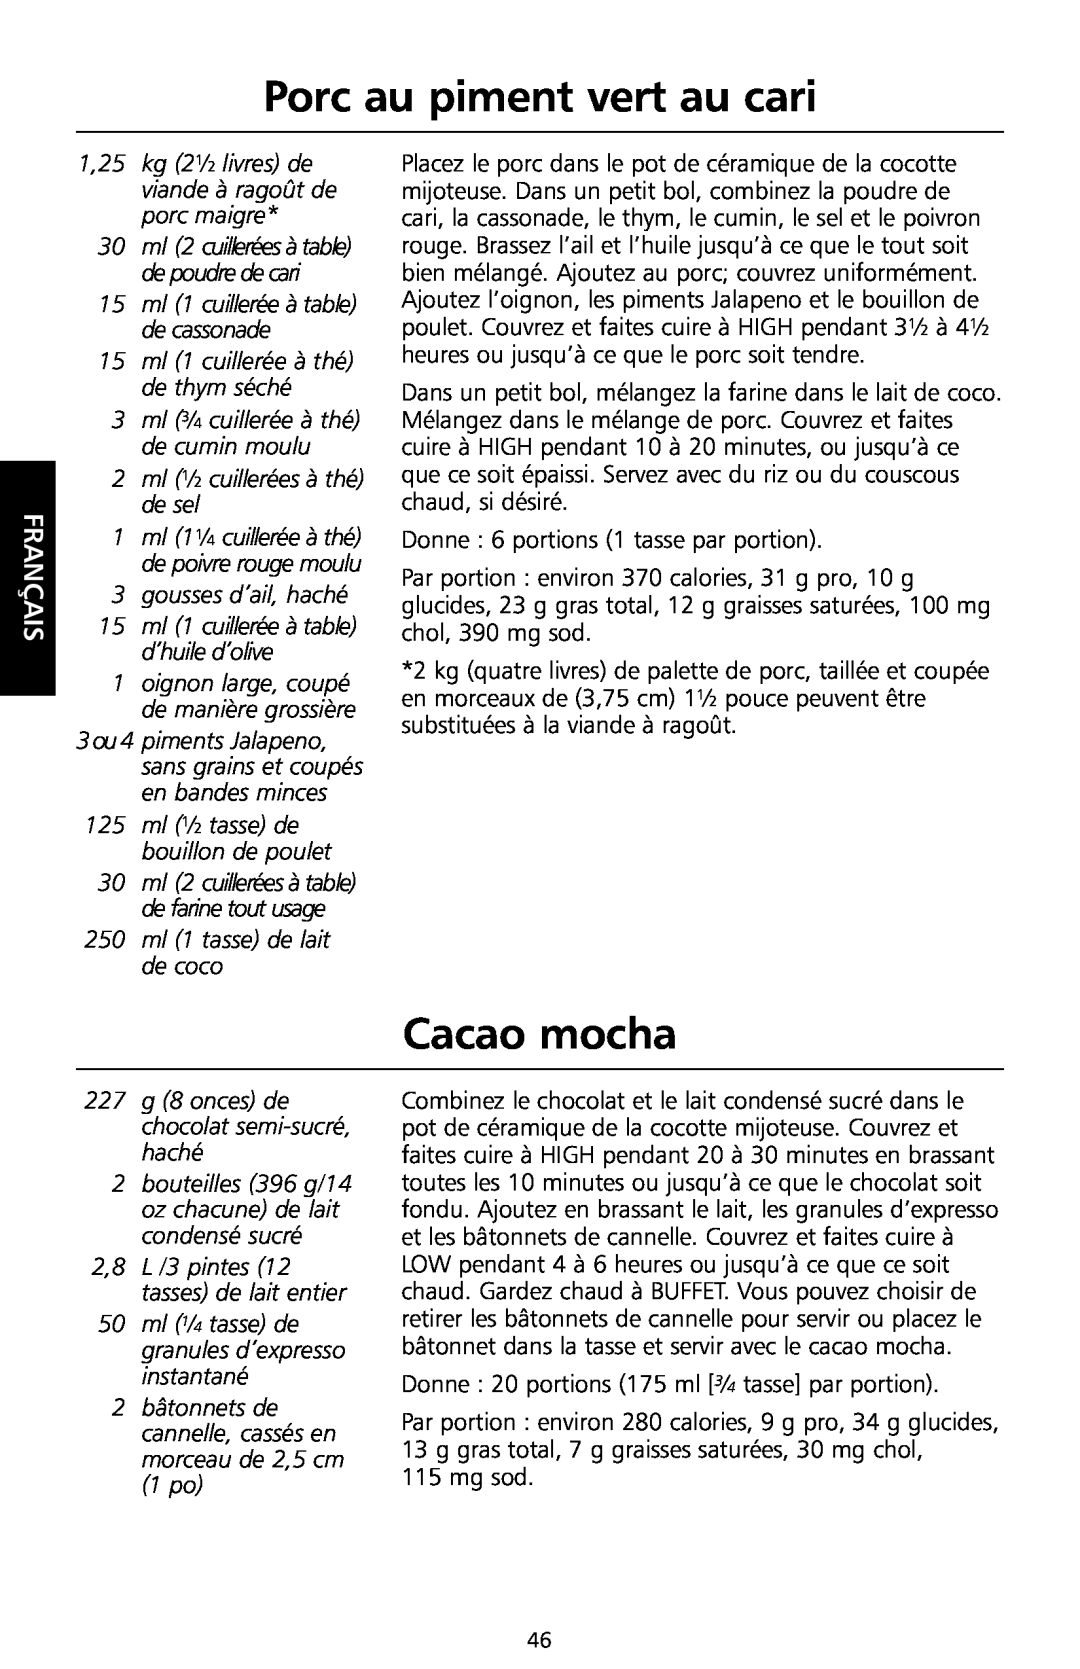 KitchenAid KSC700 manual Porc au piment vert au cari, Cacao mocha, 1,25 kg 21⁄2 livres de viande à ragoût de porc maigre 